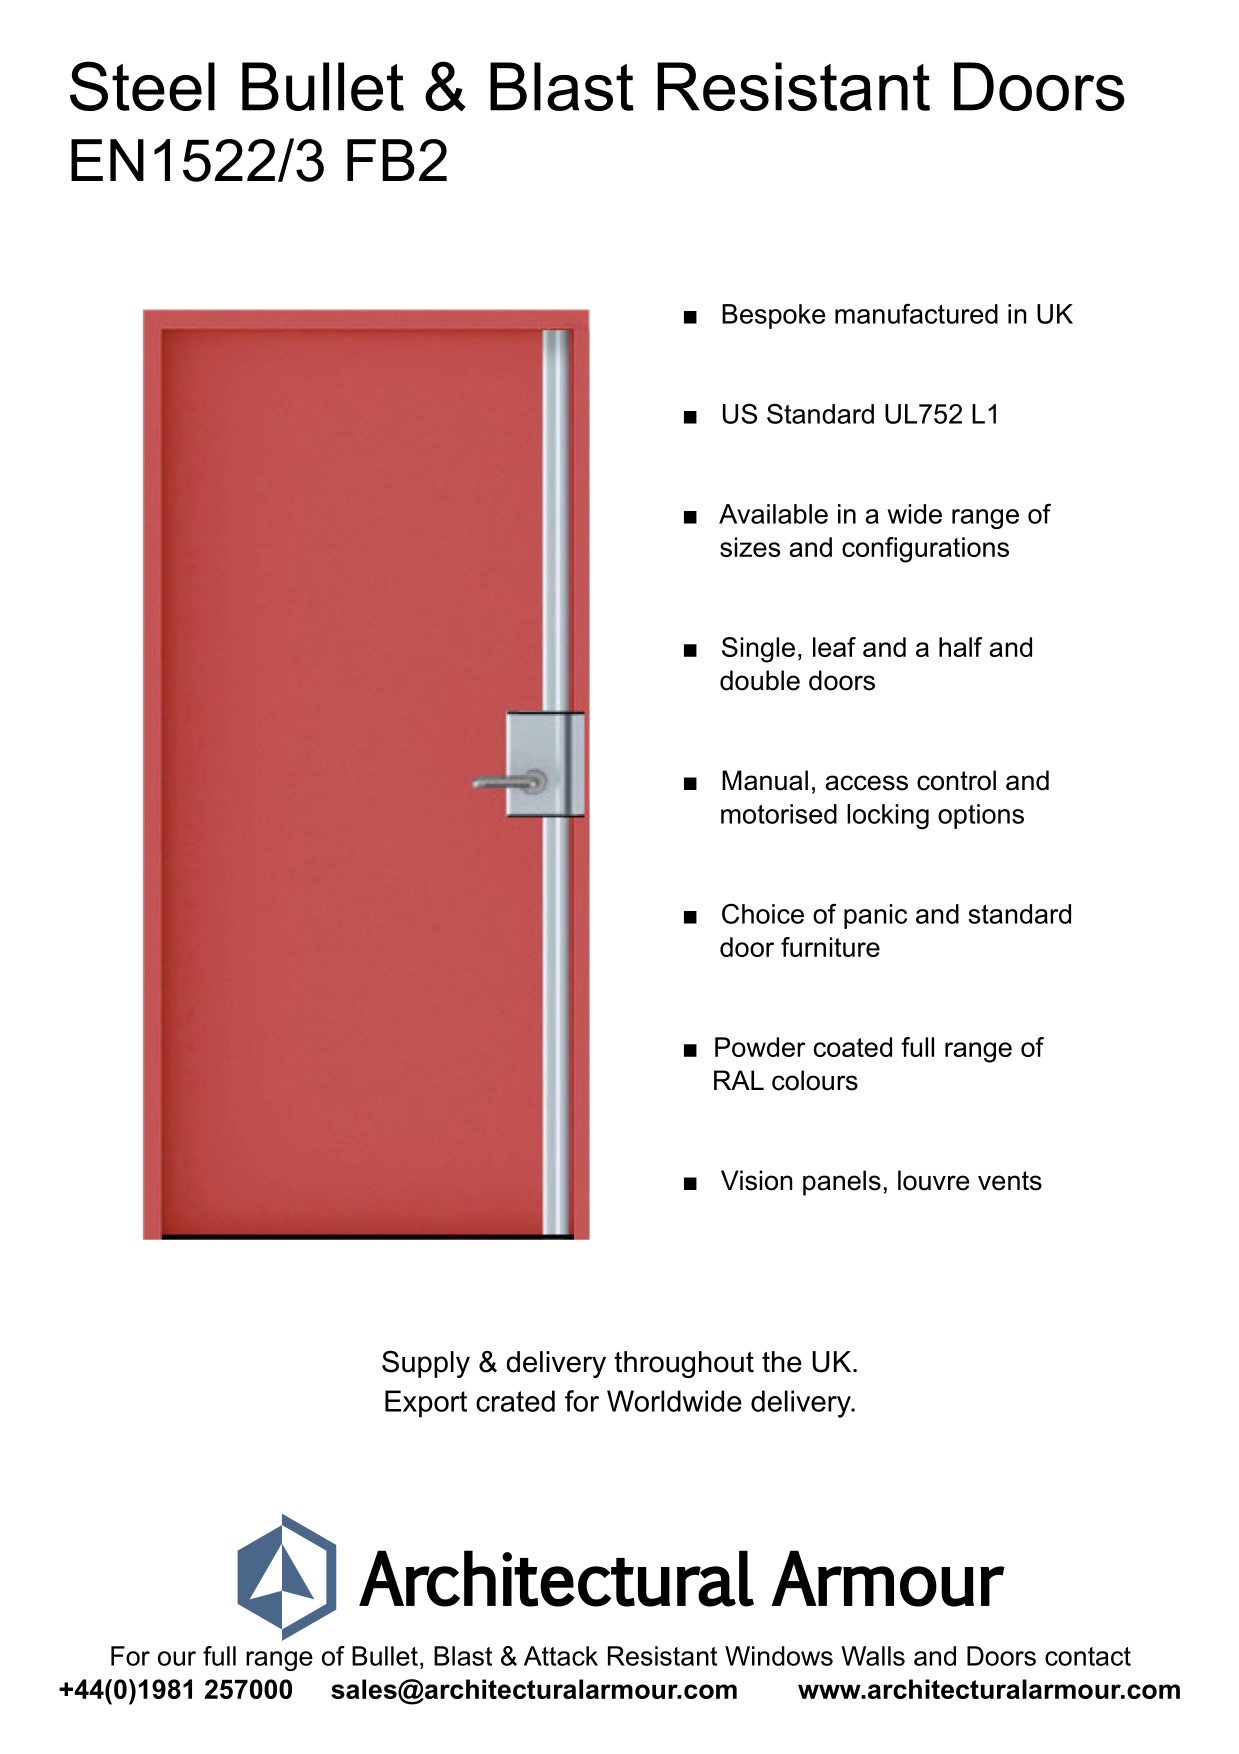 Blast-and-Bullet-Resistant-Steel-Door-UK-EN1522-3-FB2